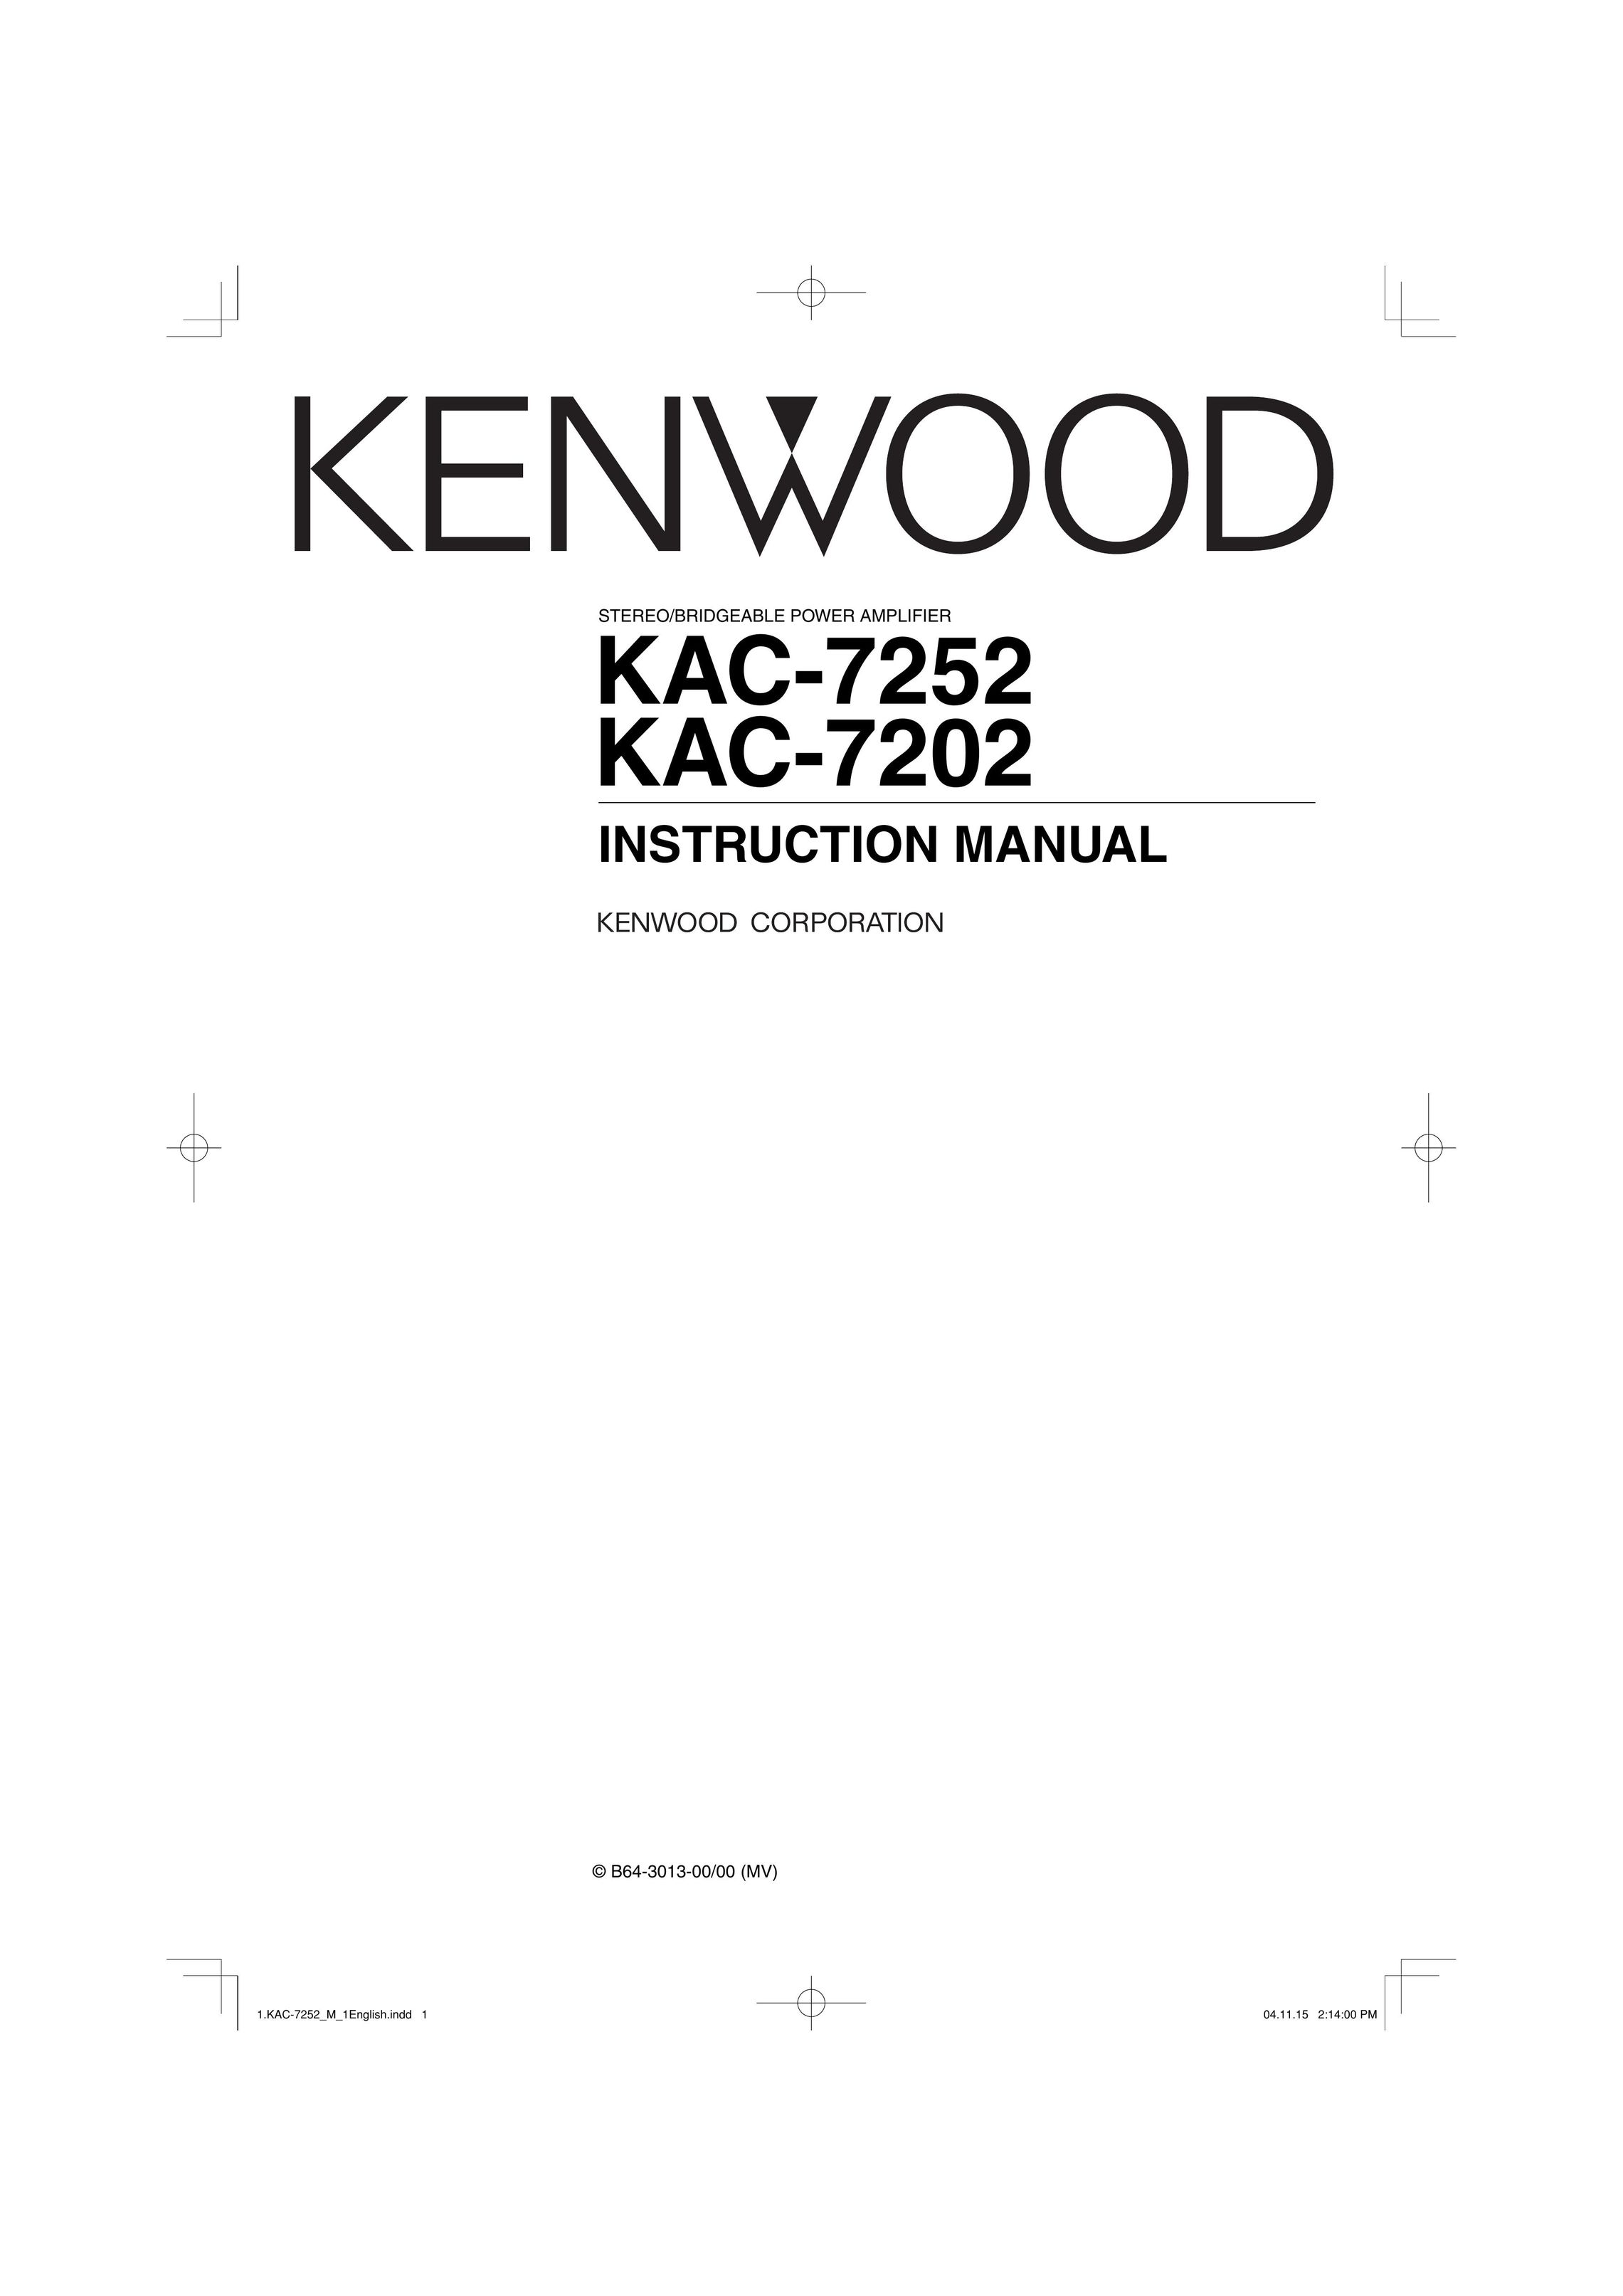 Kenwood KAC-7252 Stereo Amplifier User Manual